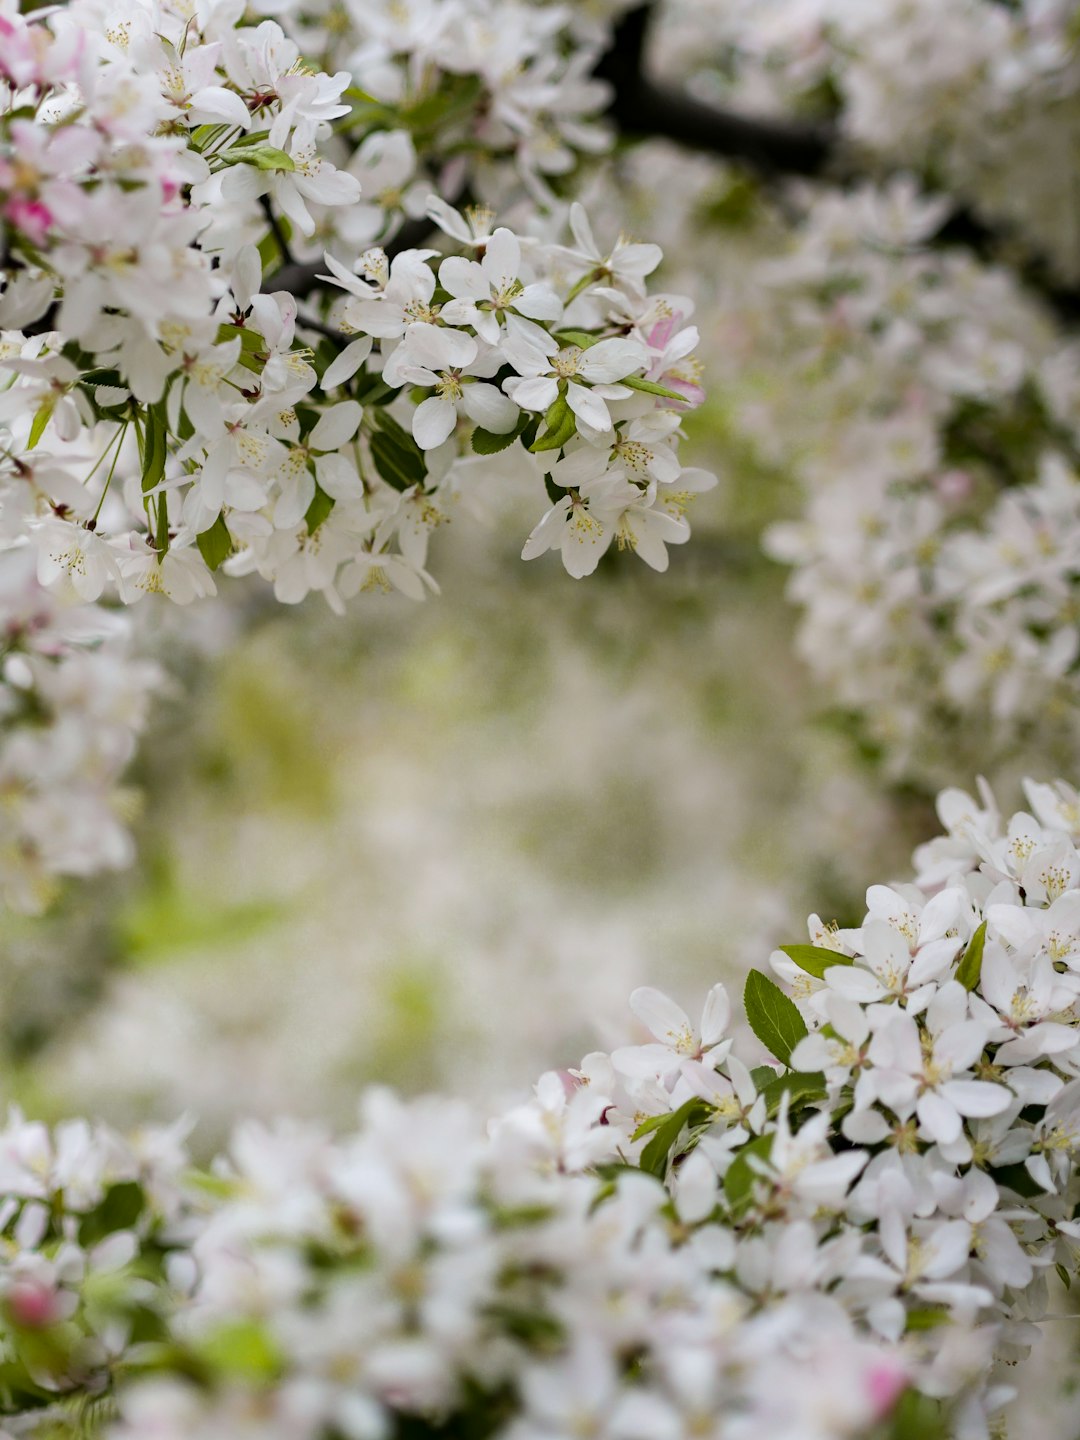 sunrose, bloom, white petaled flowering plants